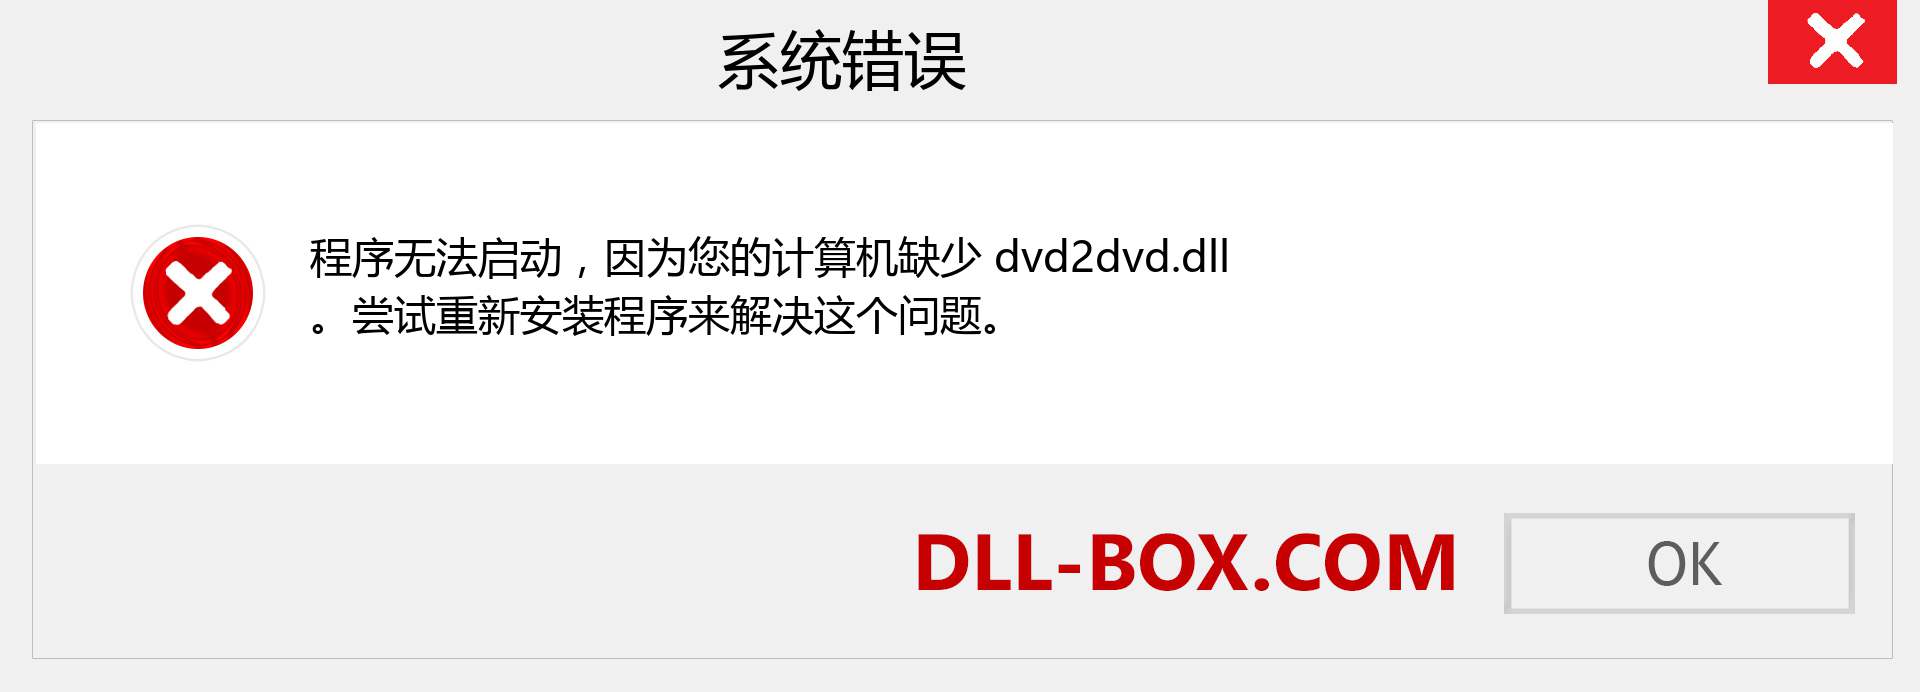 dvd2dvd.dll 文件丢失？。 适用于 Windows 7、8、10 的下载 - 修复 Windows、照片、图像上的 dvd2dvd dll 丢失错误